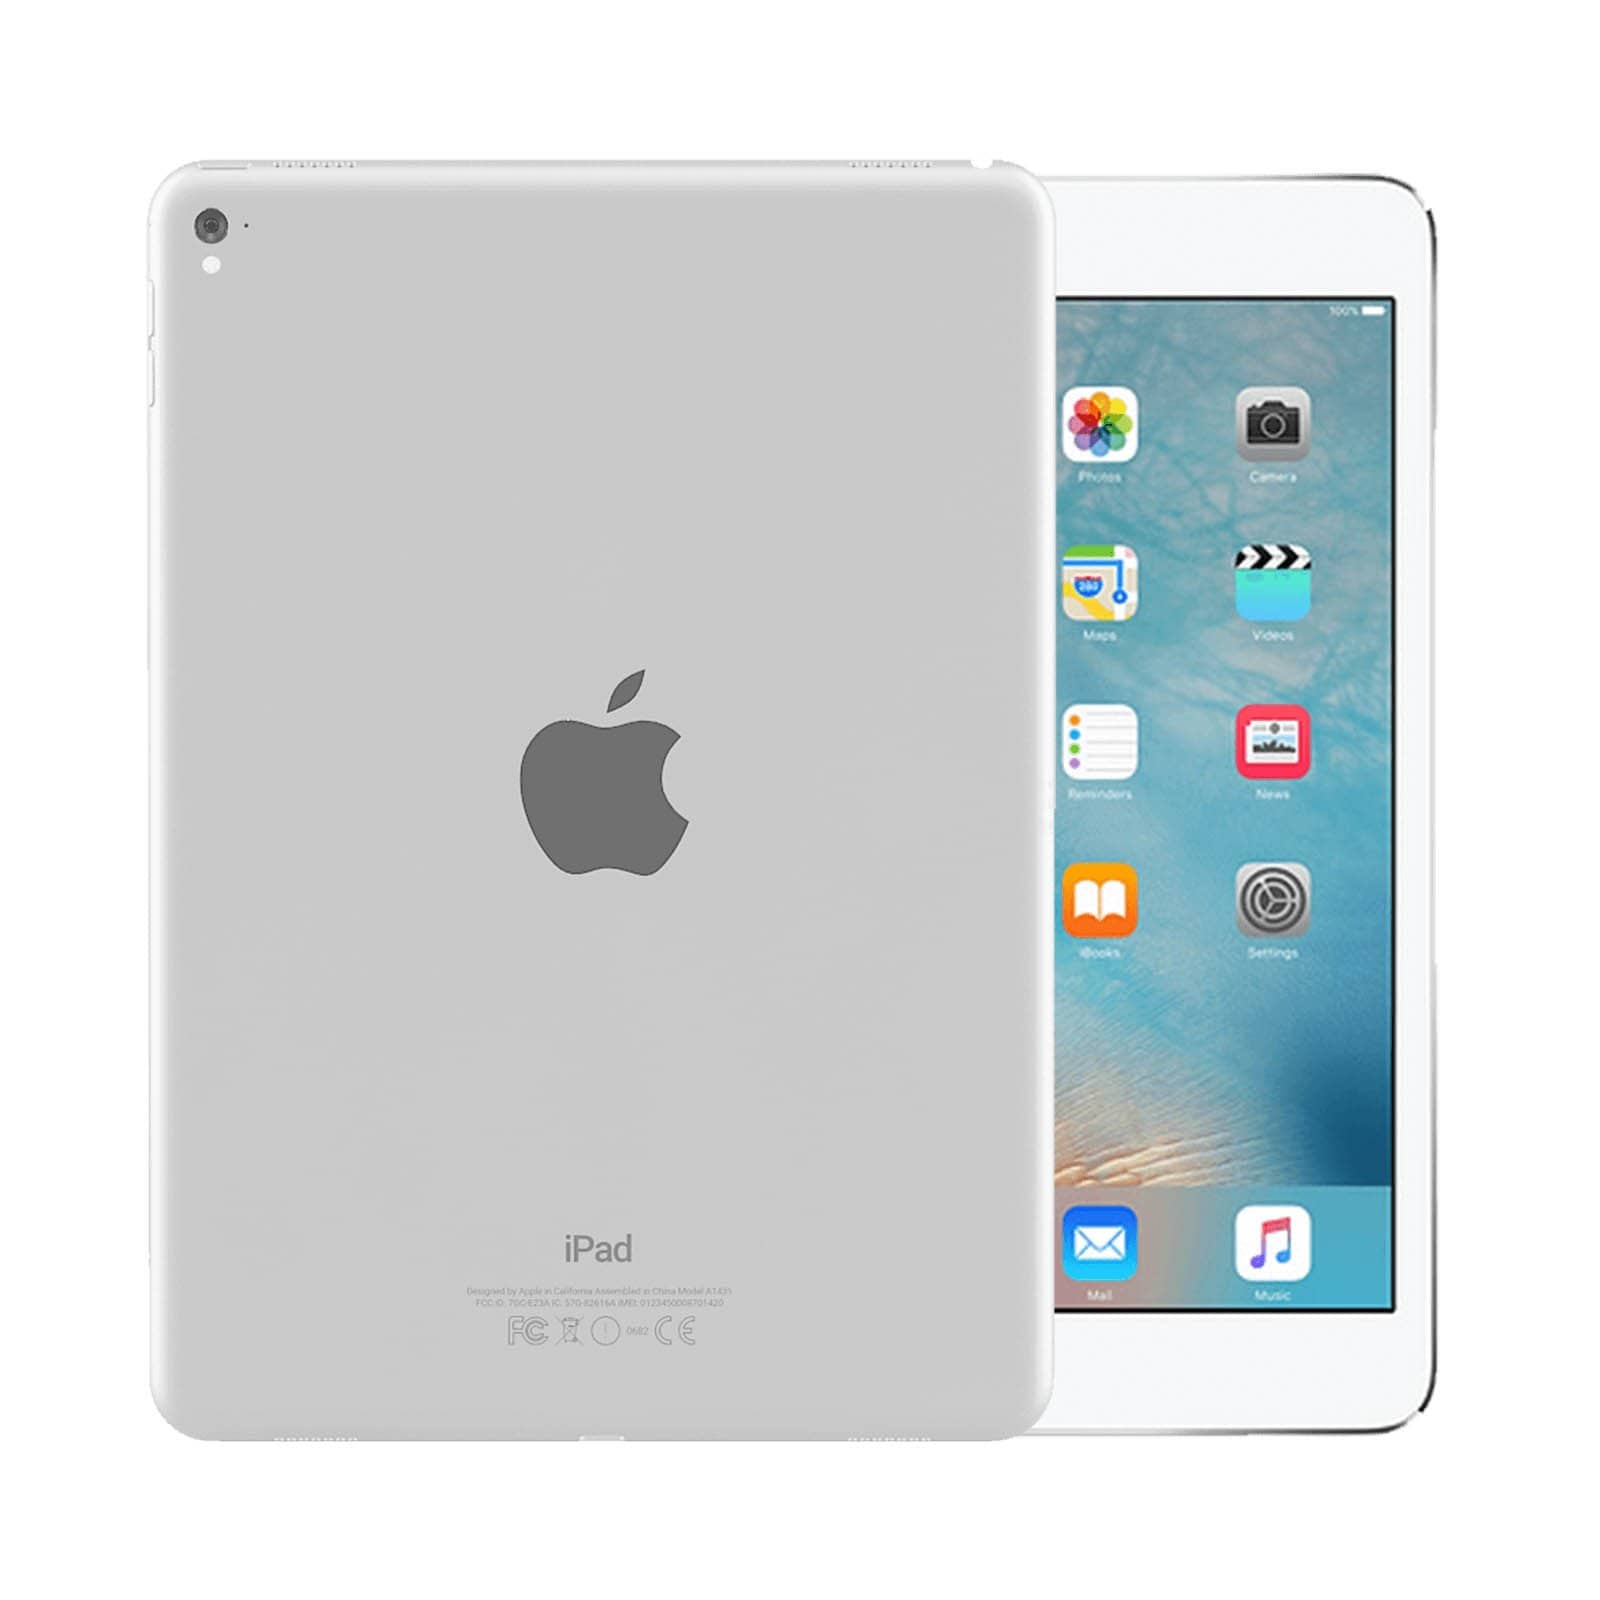 iPad Pro 9.7 Inch 128GB Silver Pristine - WiFi 128GB Silver Pristine